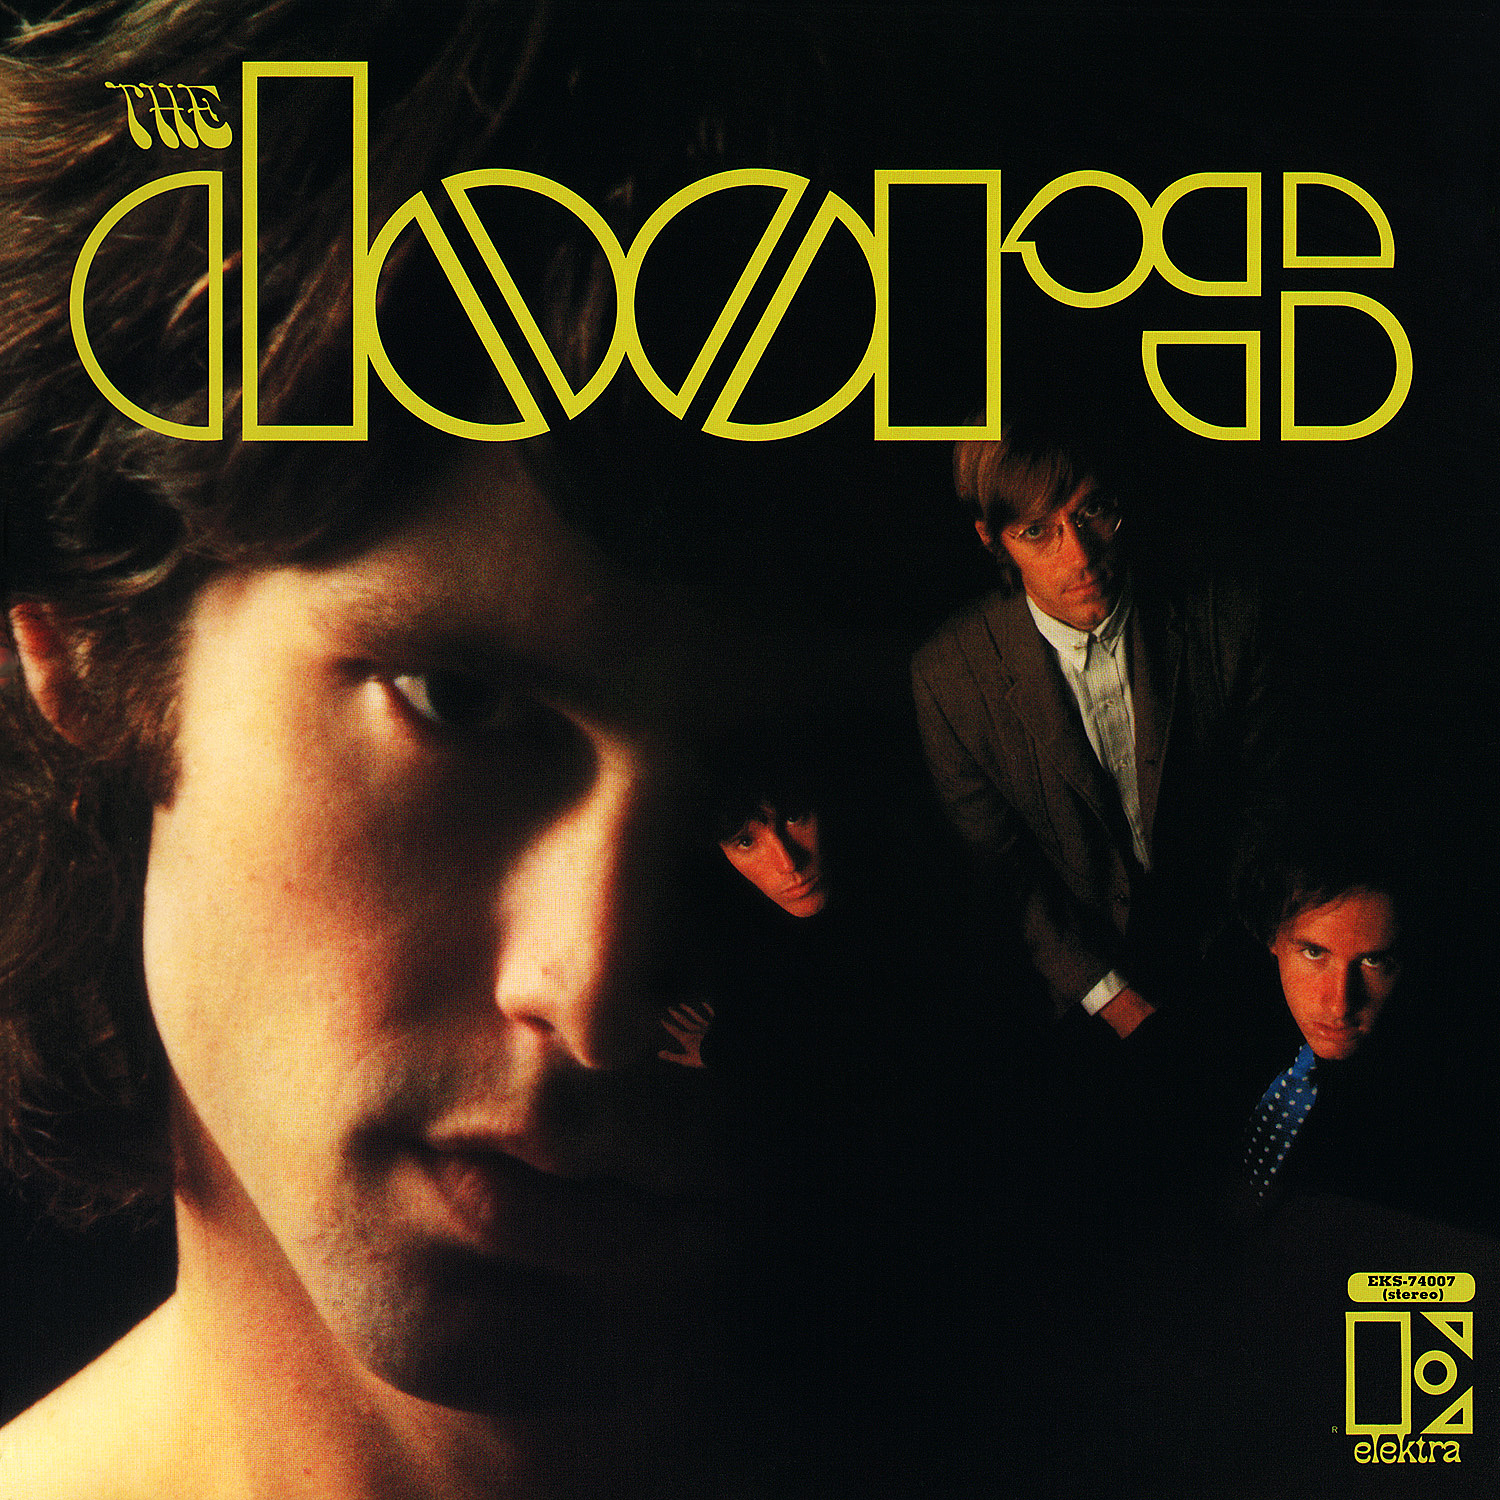 The Doors debut album cover